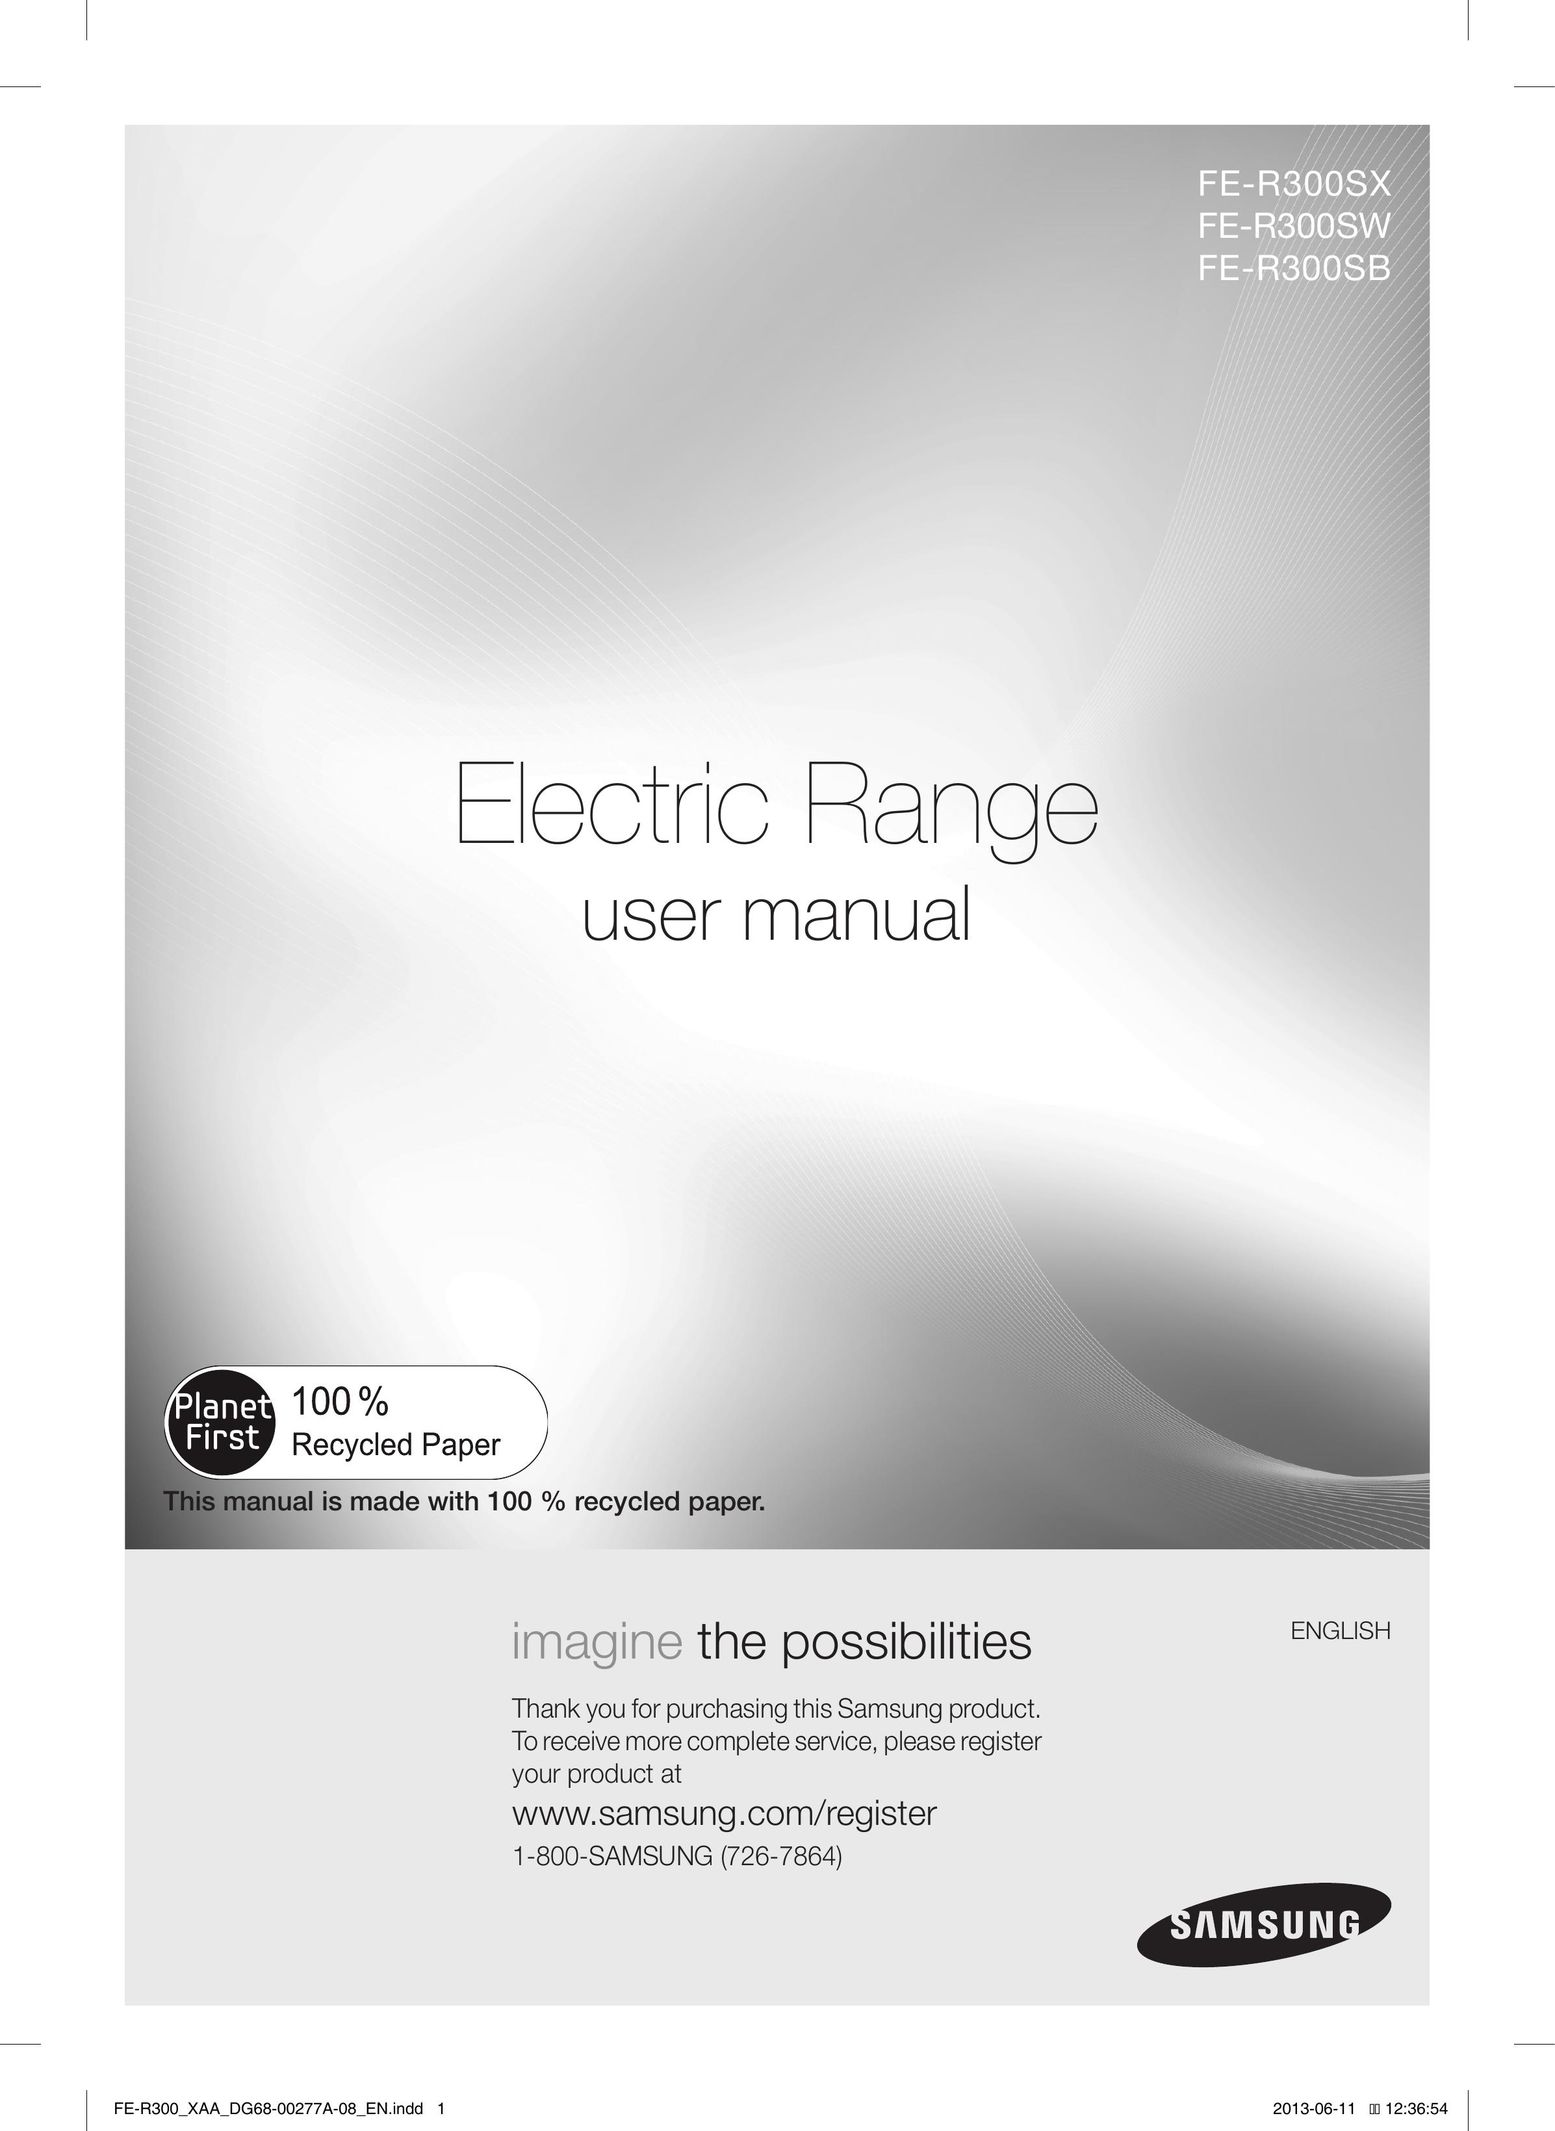 Samsung FER300SXPKG Range User Manual